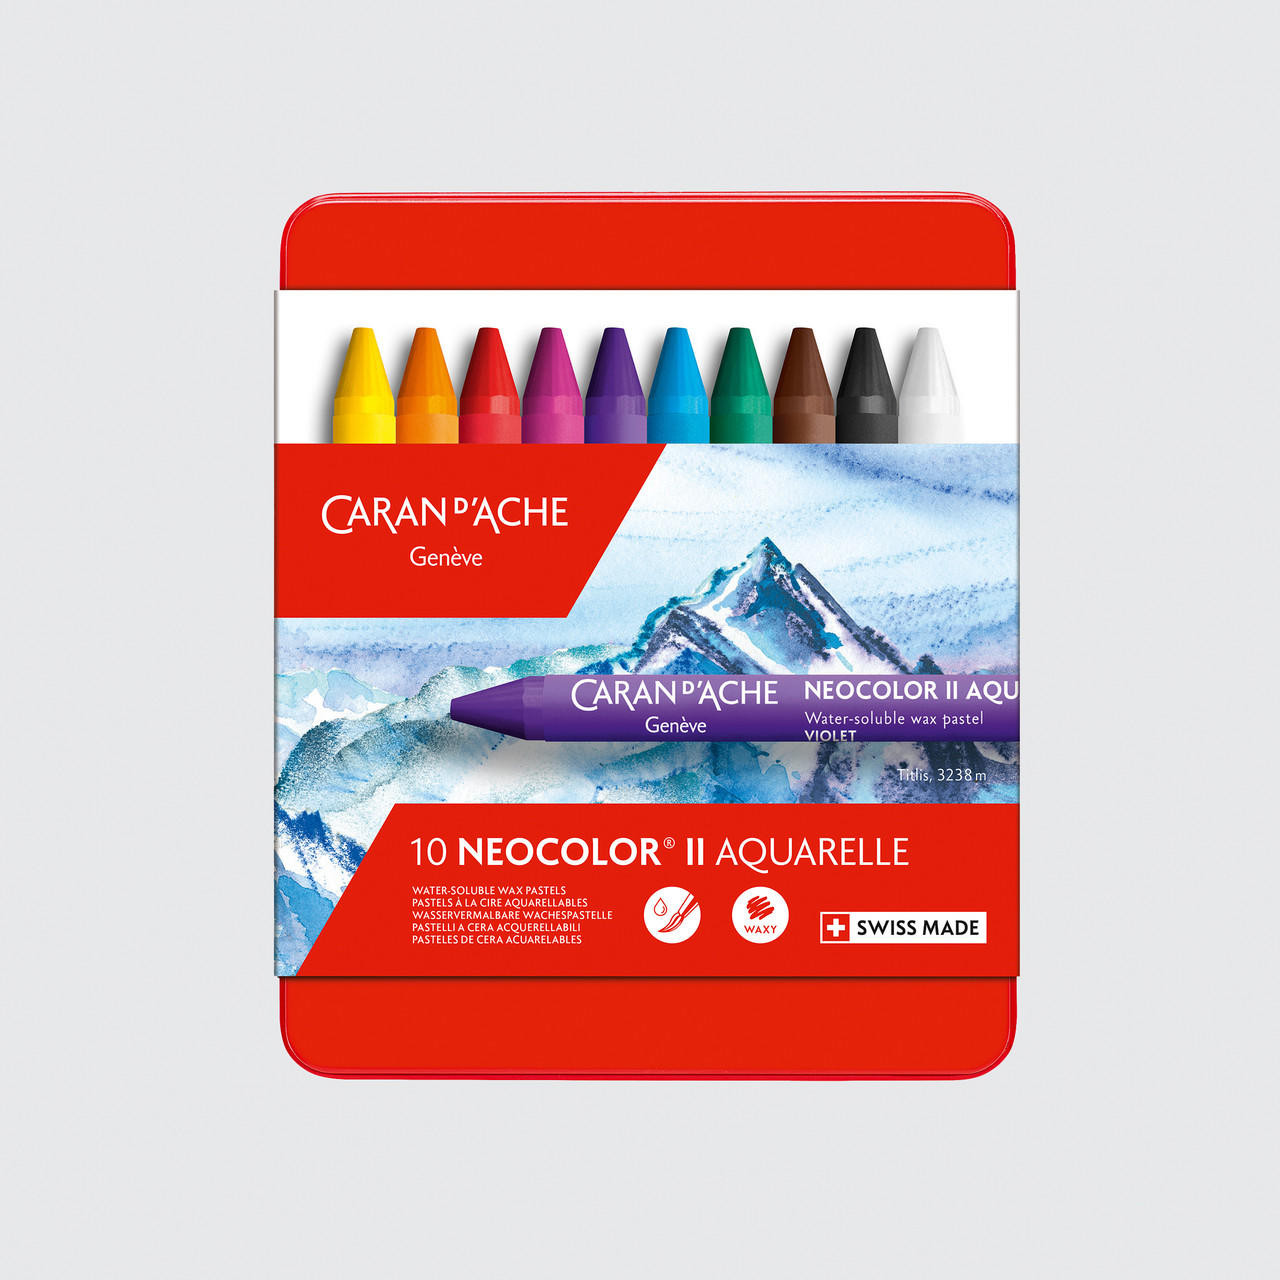 Caran D’ache Neocolor II Aquarelle Wax Pastels Tin Set of 10